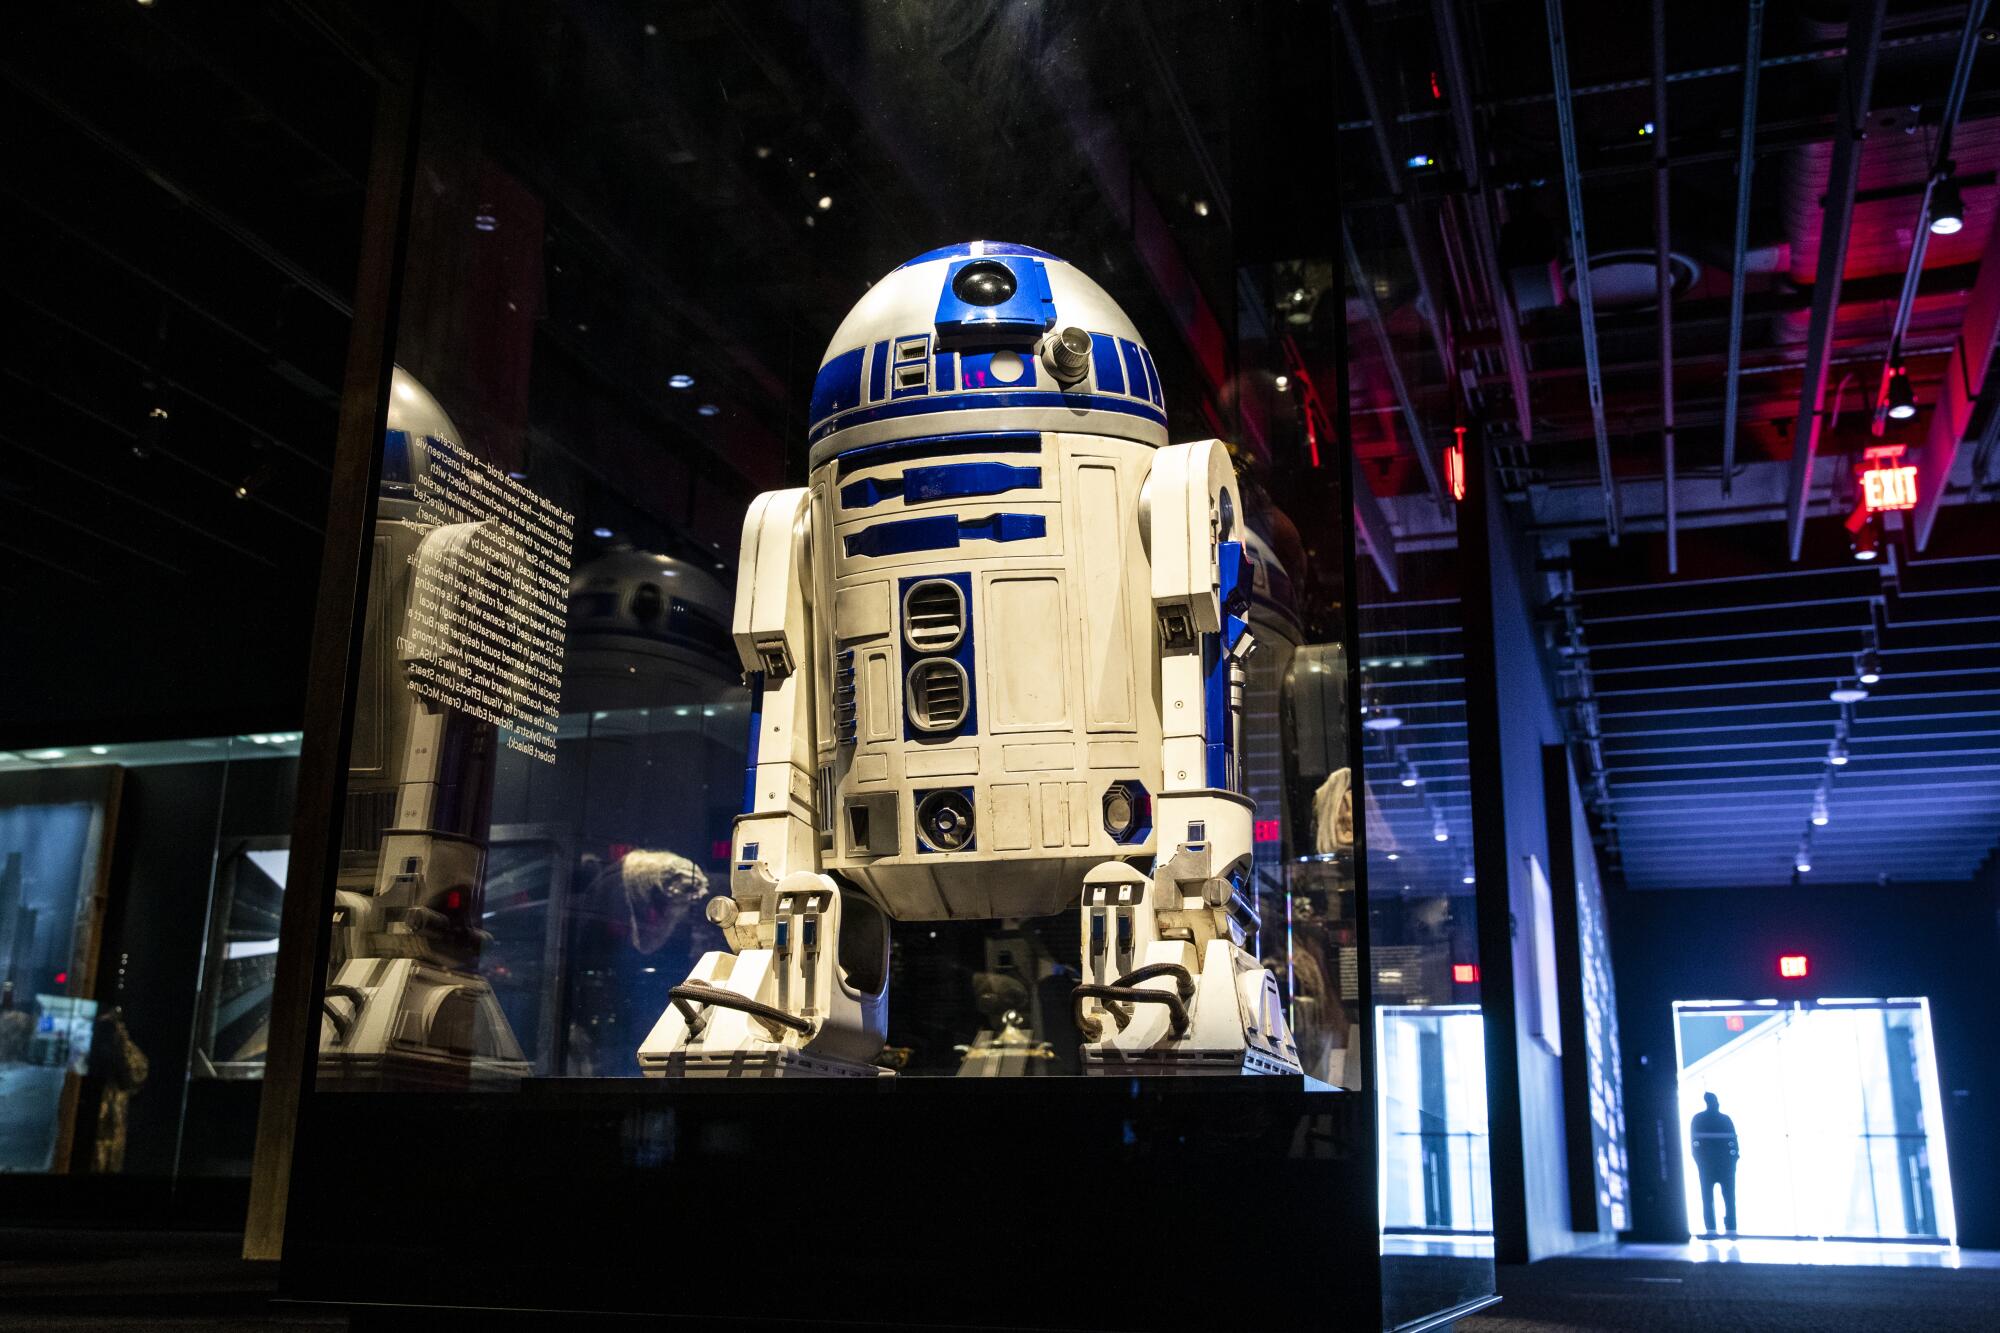 R2-D2 in a glass case in a museum.